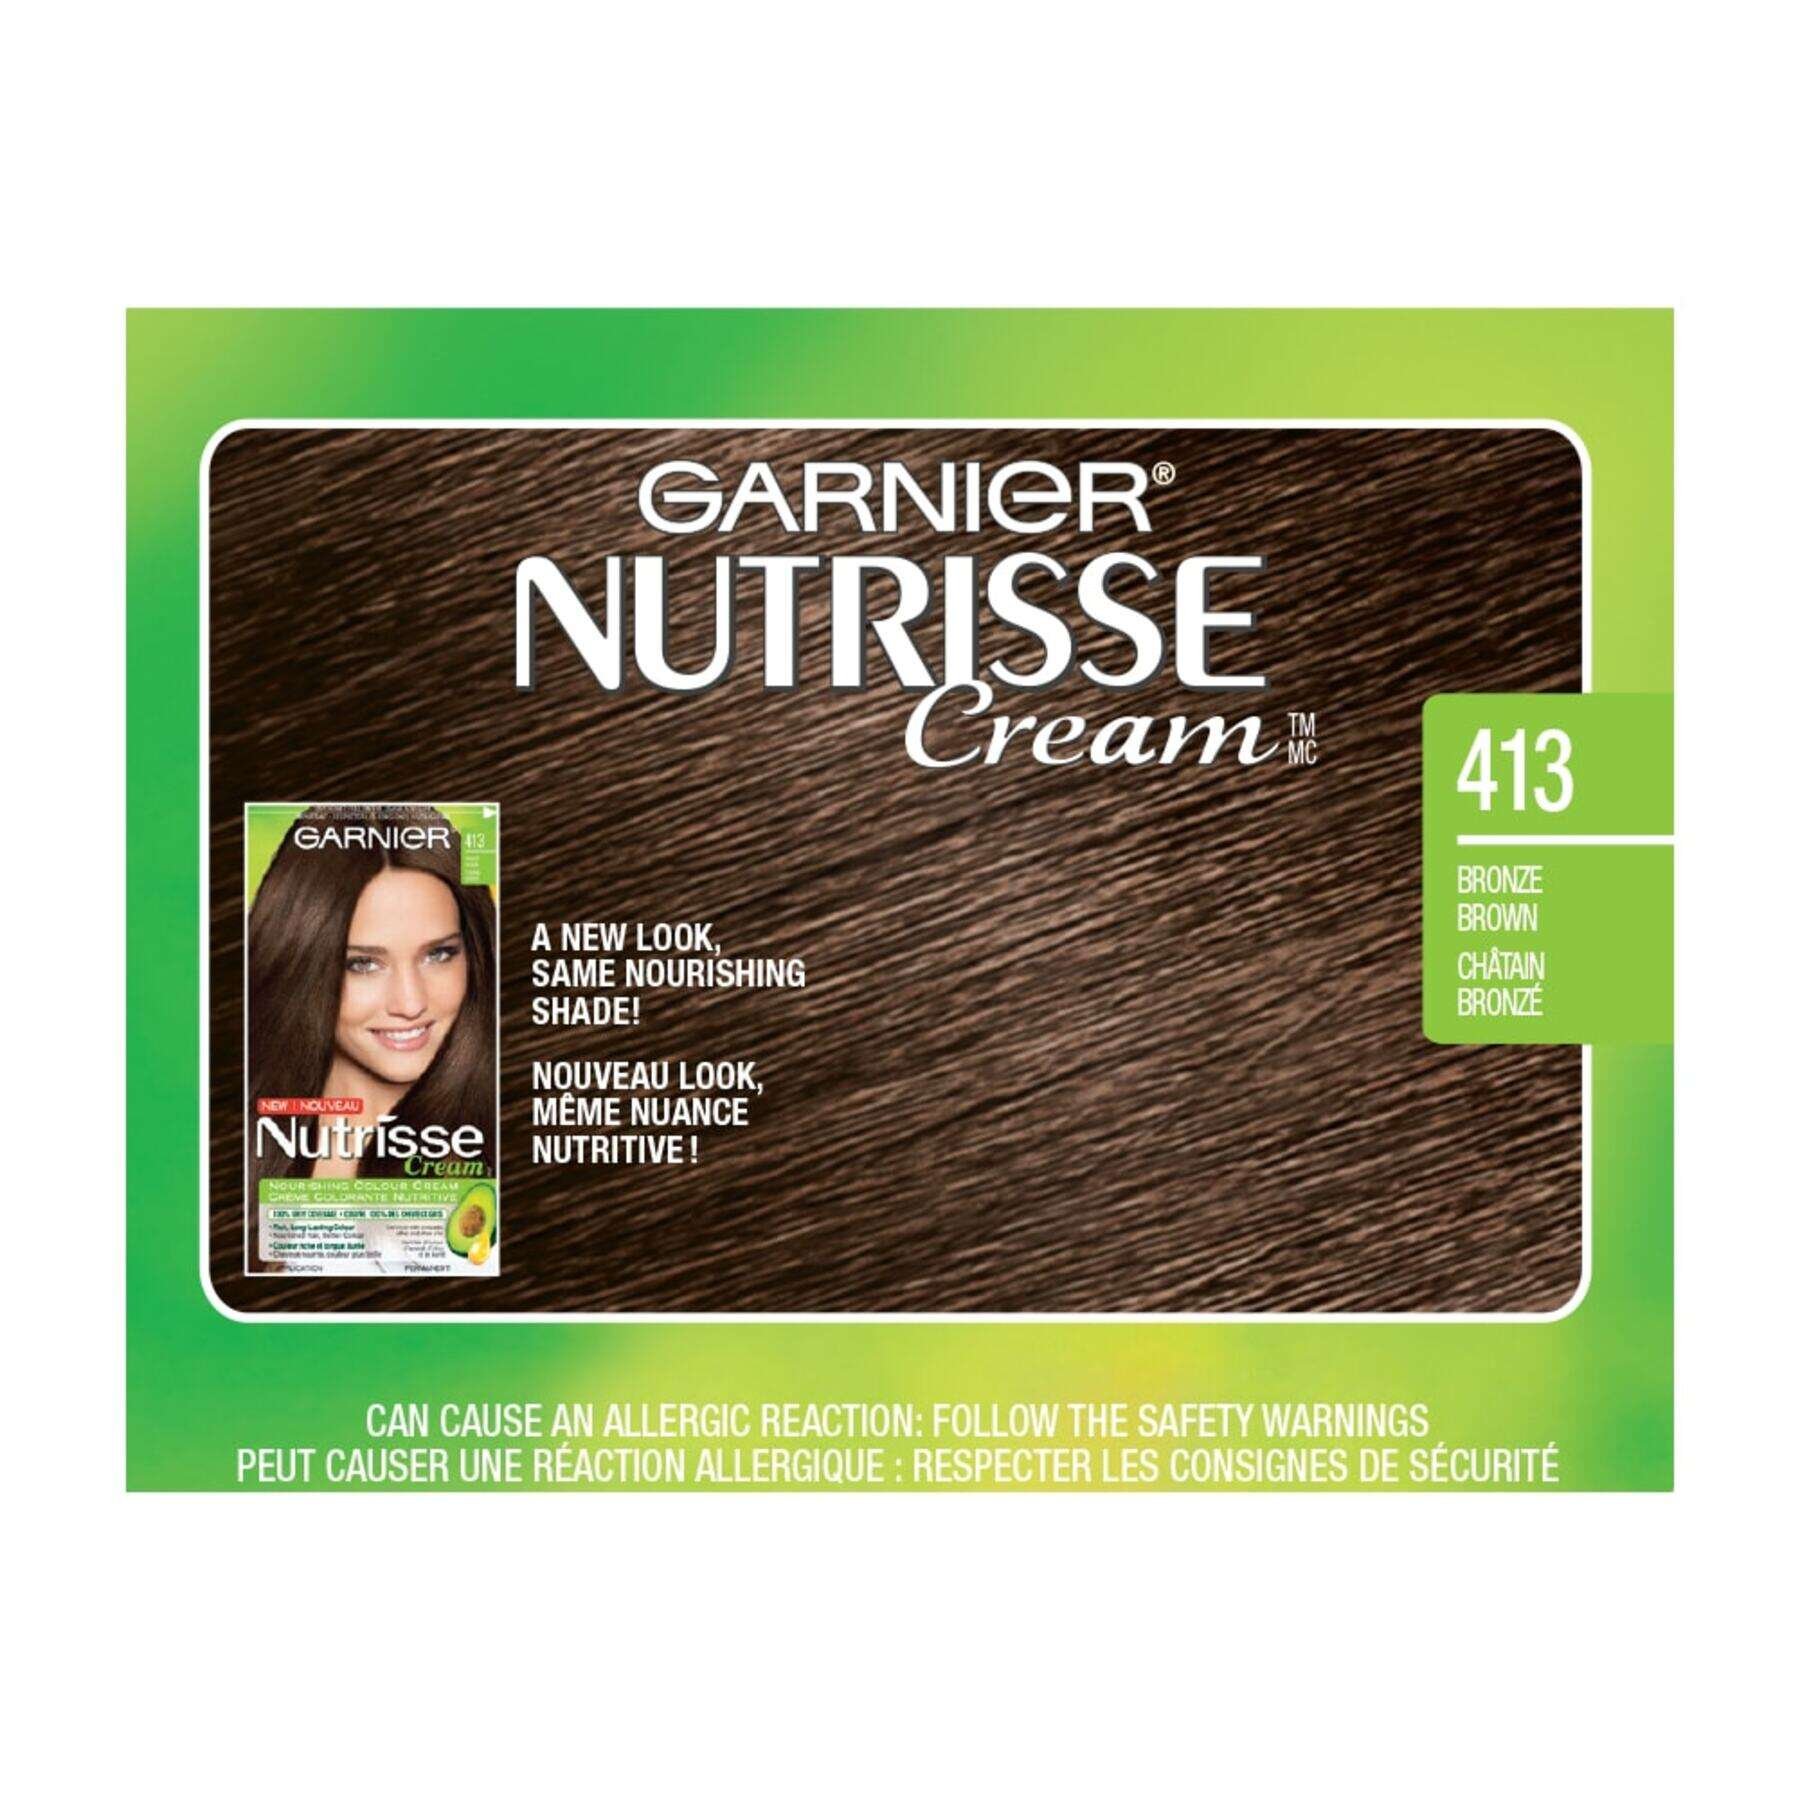 garnier hair dye nutrisse cream 413 bronze brown 0603084412358 swatch